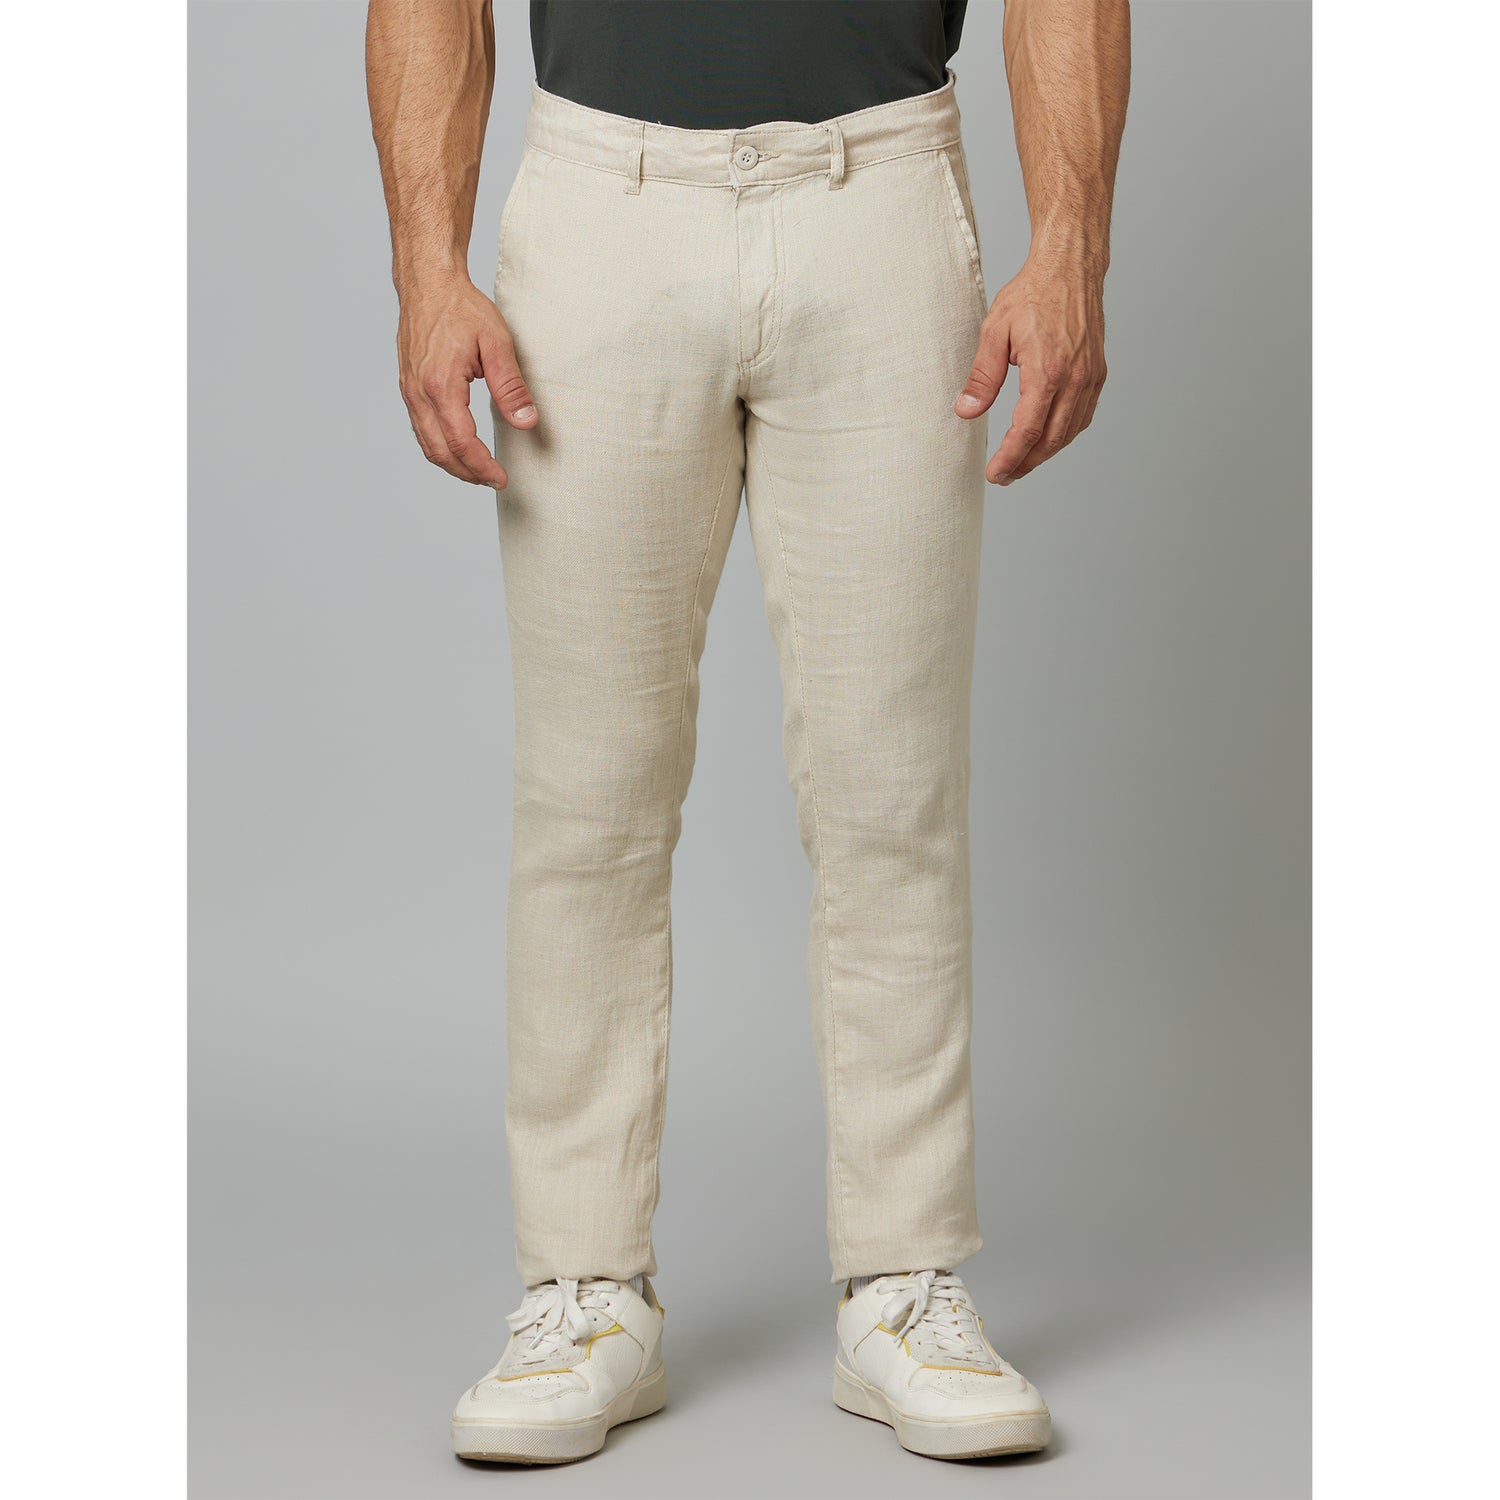 Beige Mid Rise Plain Linen Slim Fit Trousers (DOFLEXIN)